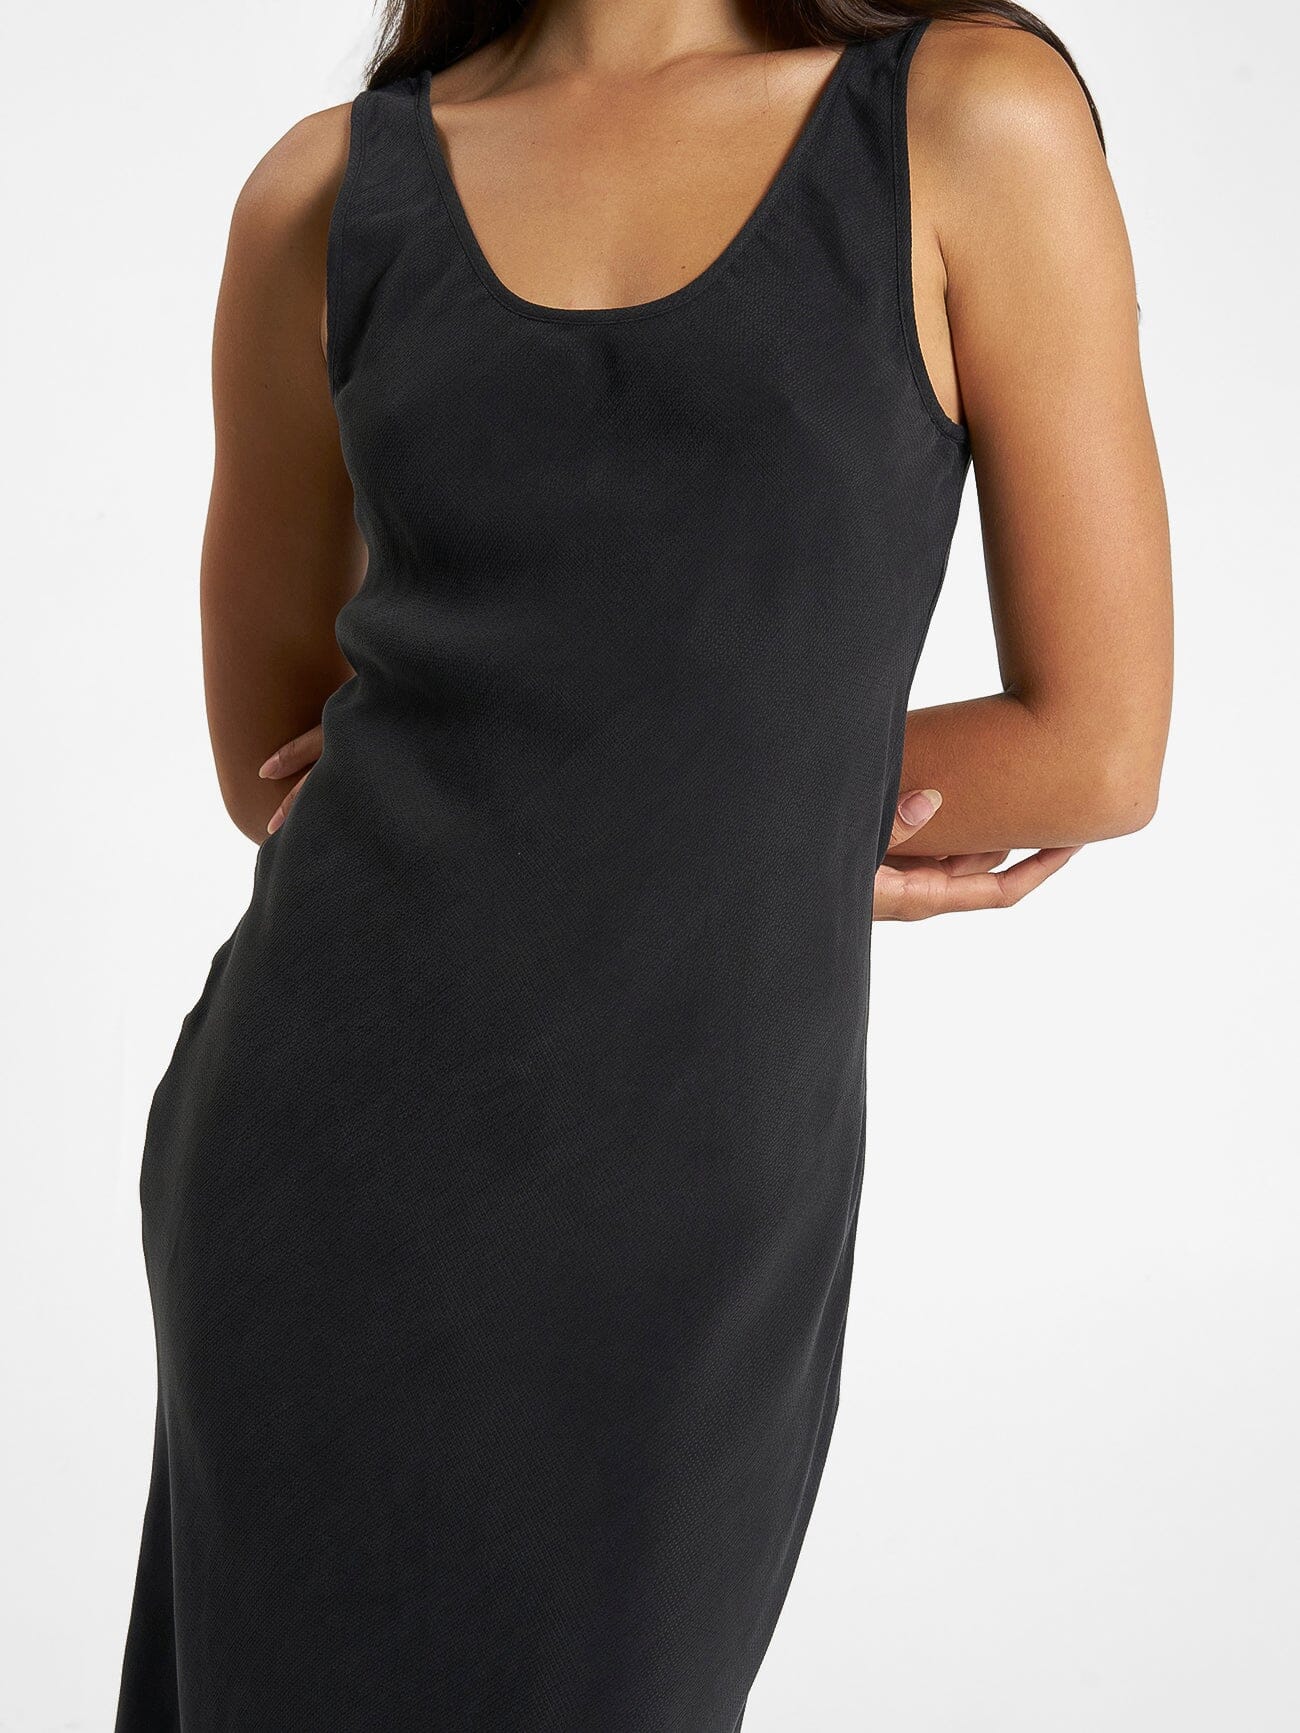 Nerissa Slip Dress - Antique Black